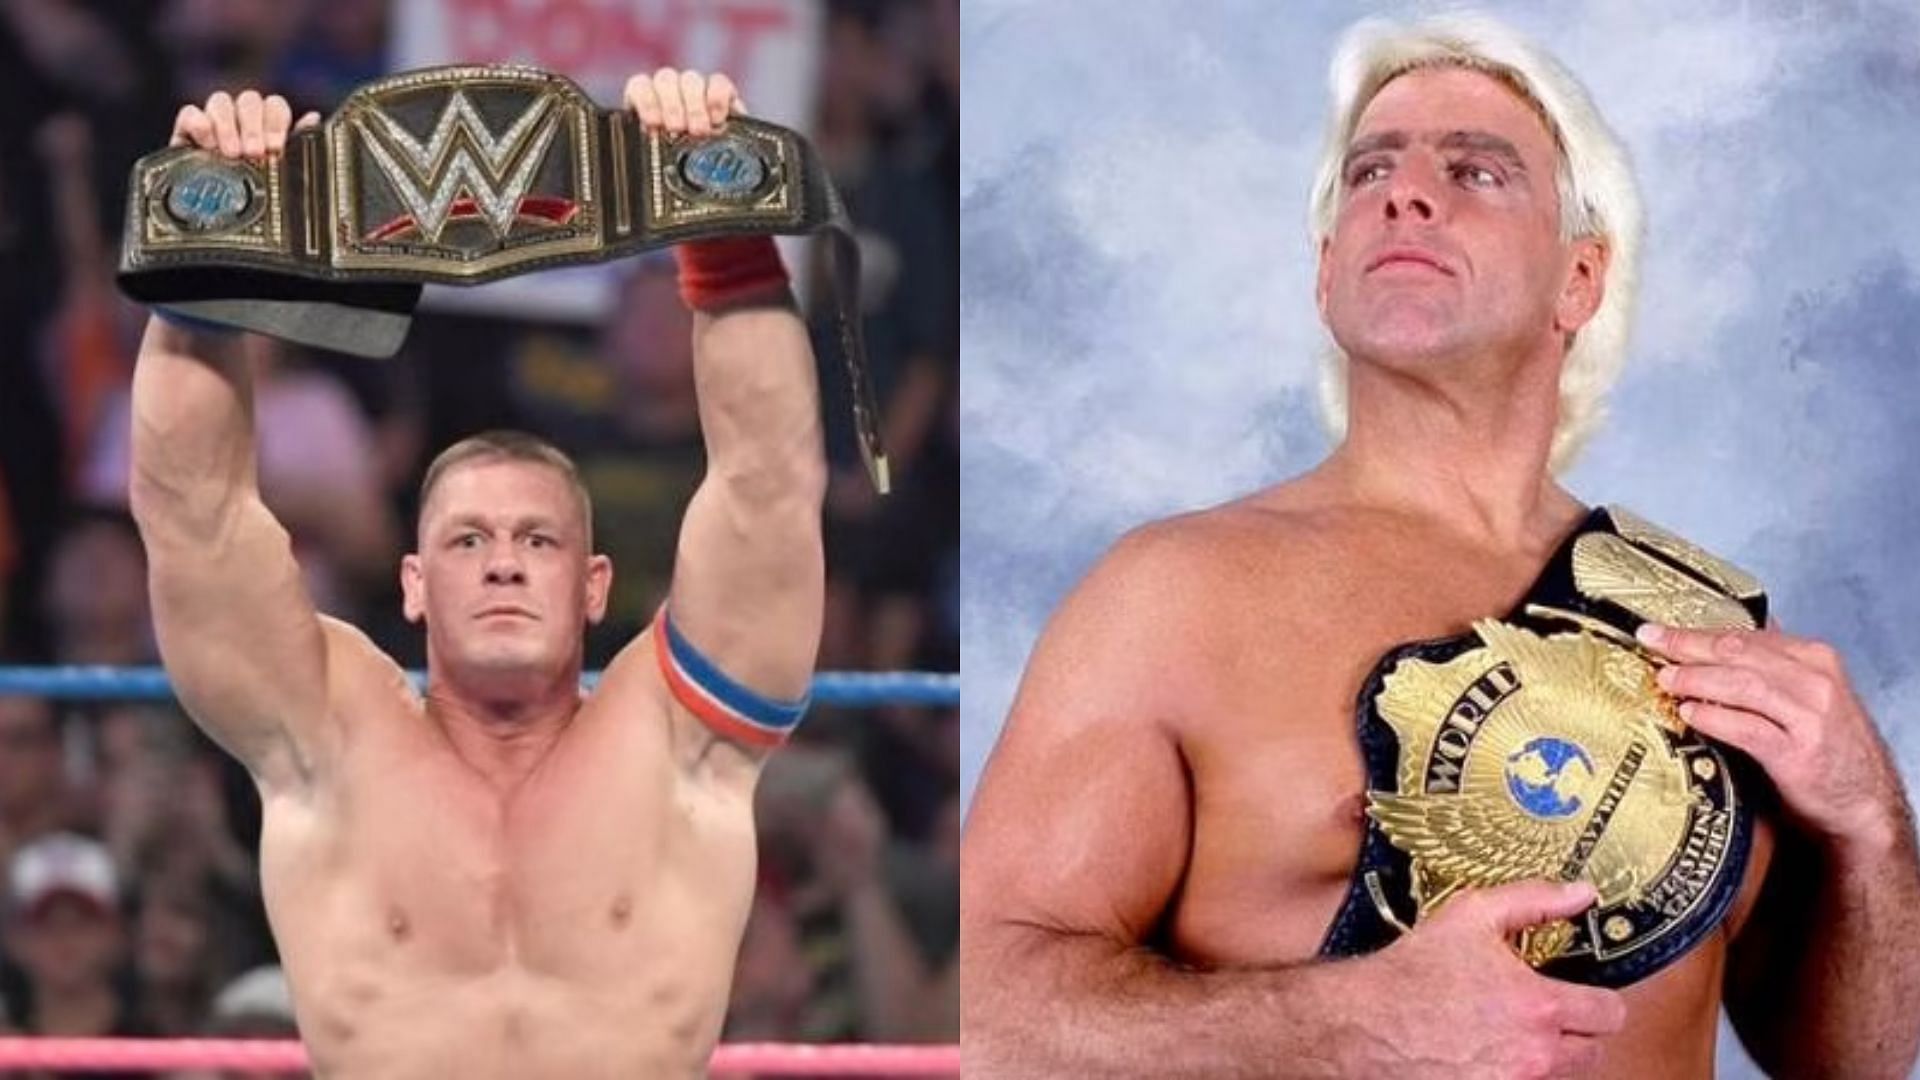 Should Cena break Flair